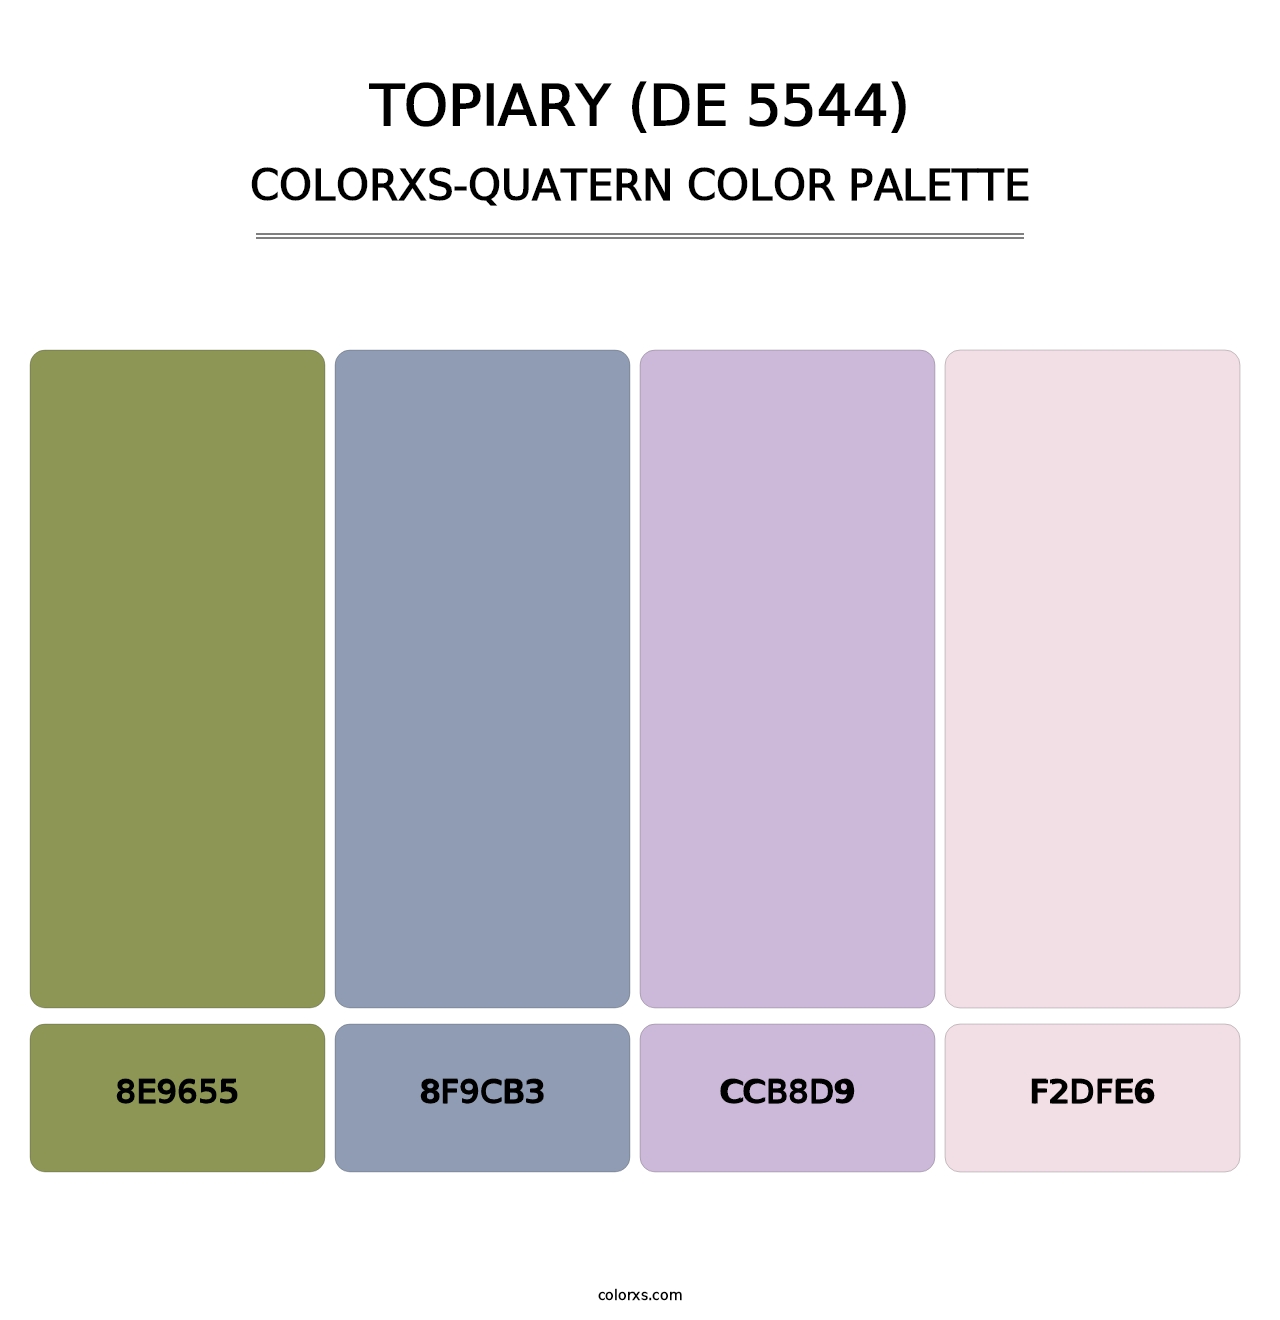 Topiary (DE 5544) - Colorxs Quatern Palette